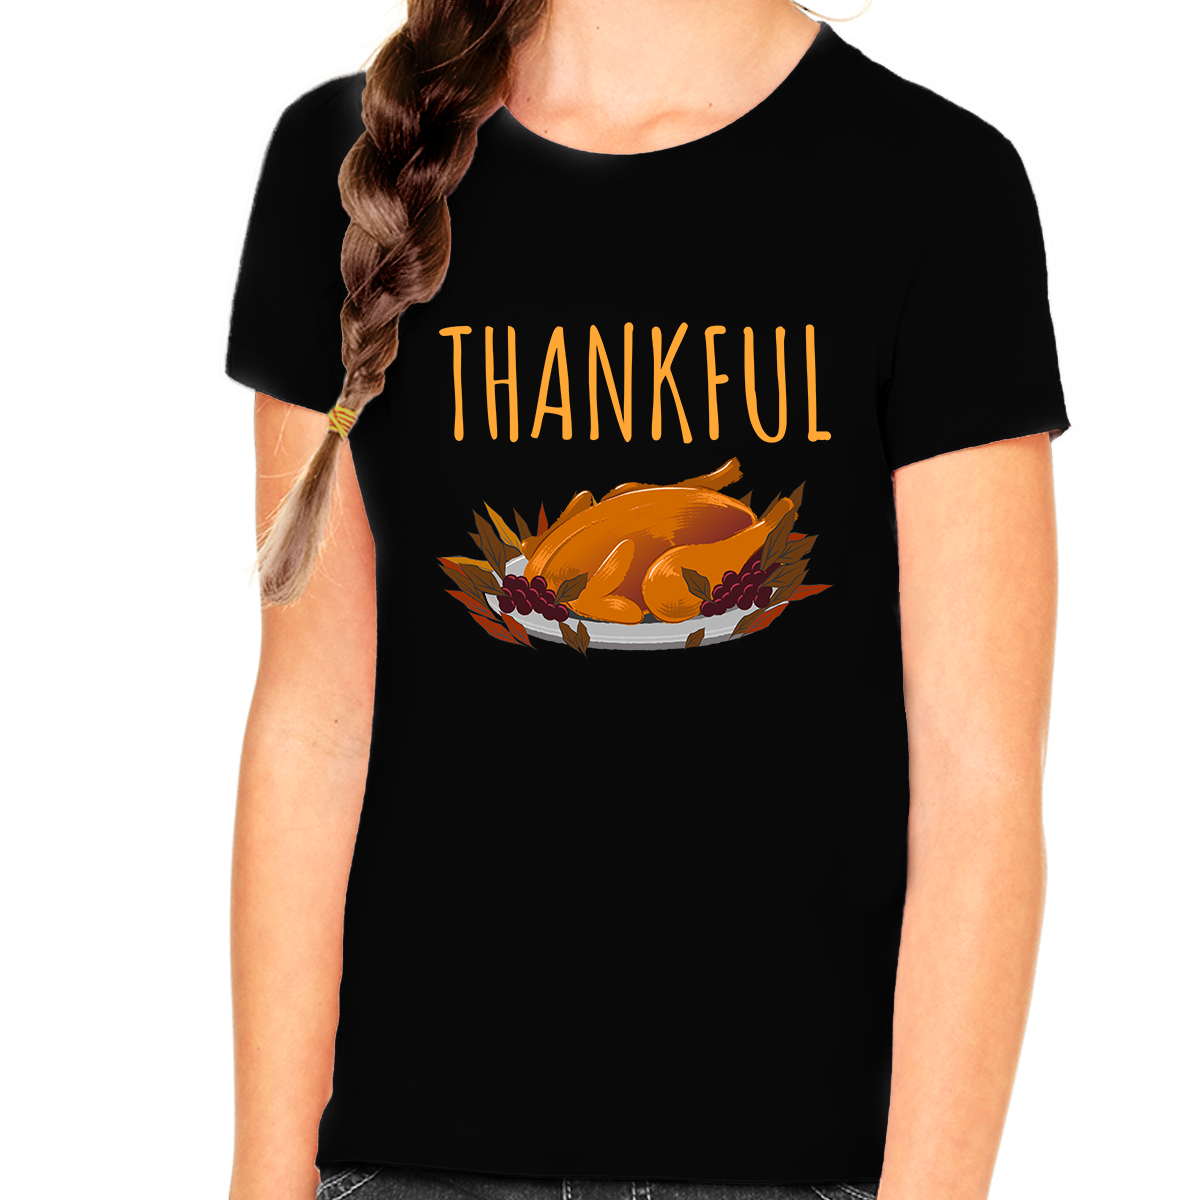 Girls Thanksgiving Shirt Cute Kids Turkey Shirt Thanksgiving Gifts Fall Shirts for Kids Thanksgiving Shirt